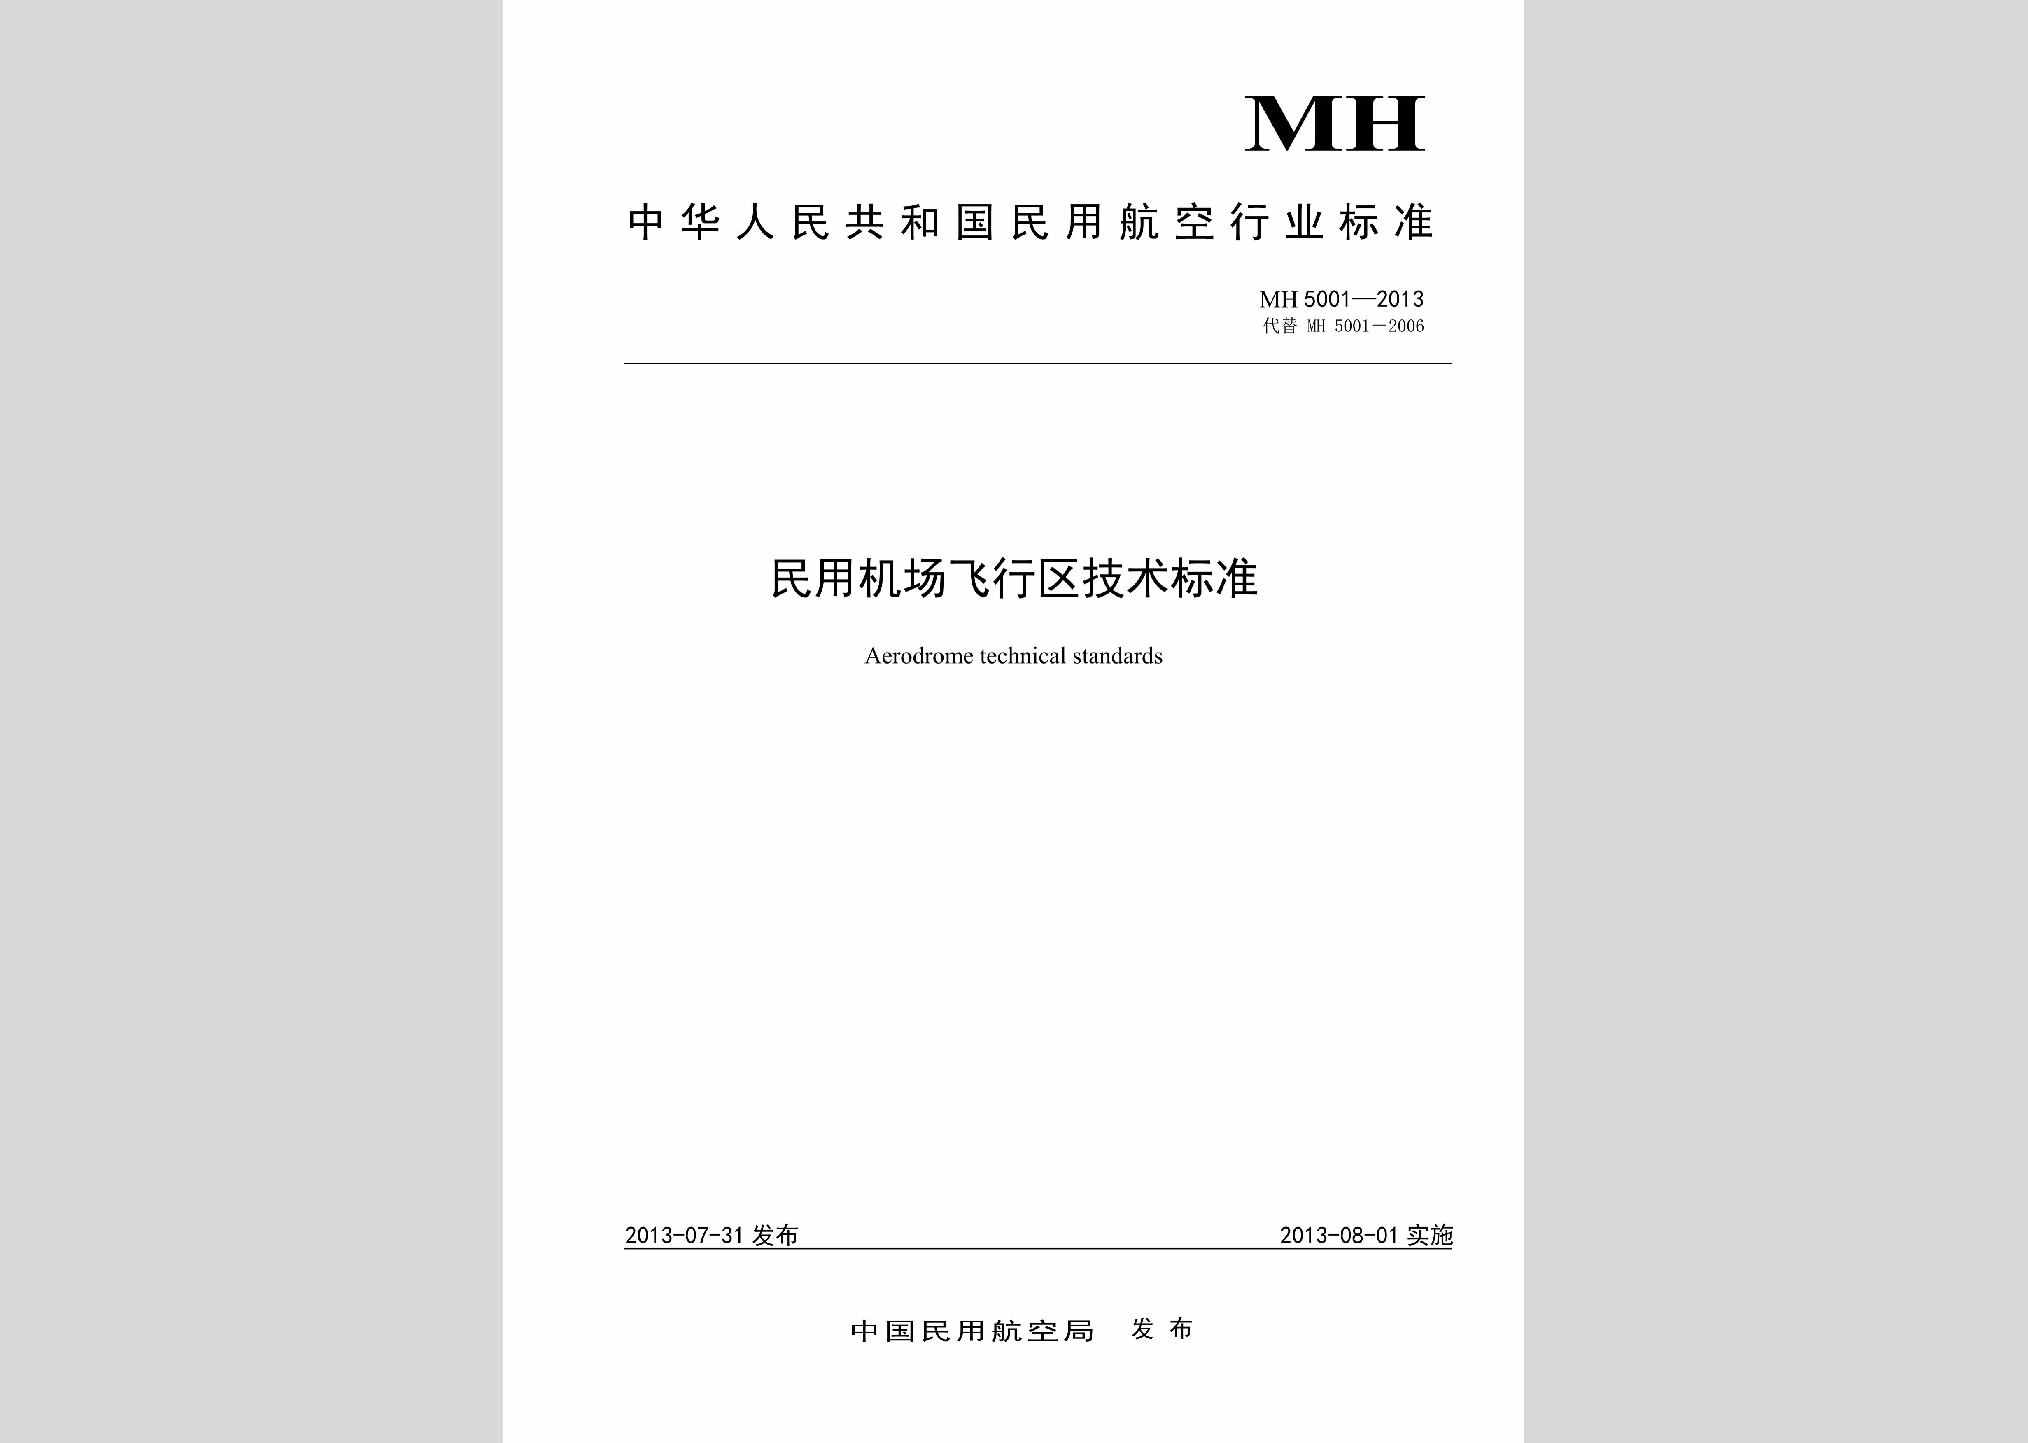 MH5001-2013：民用机场飞行区技术标准